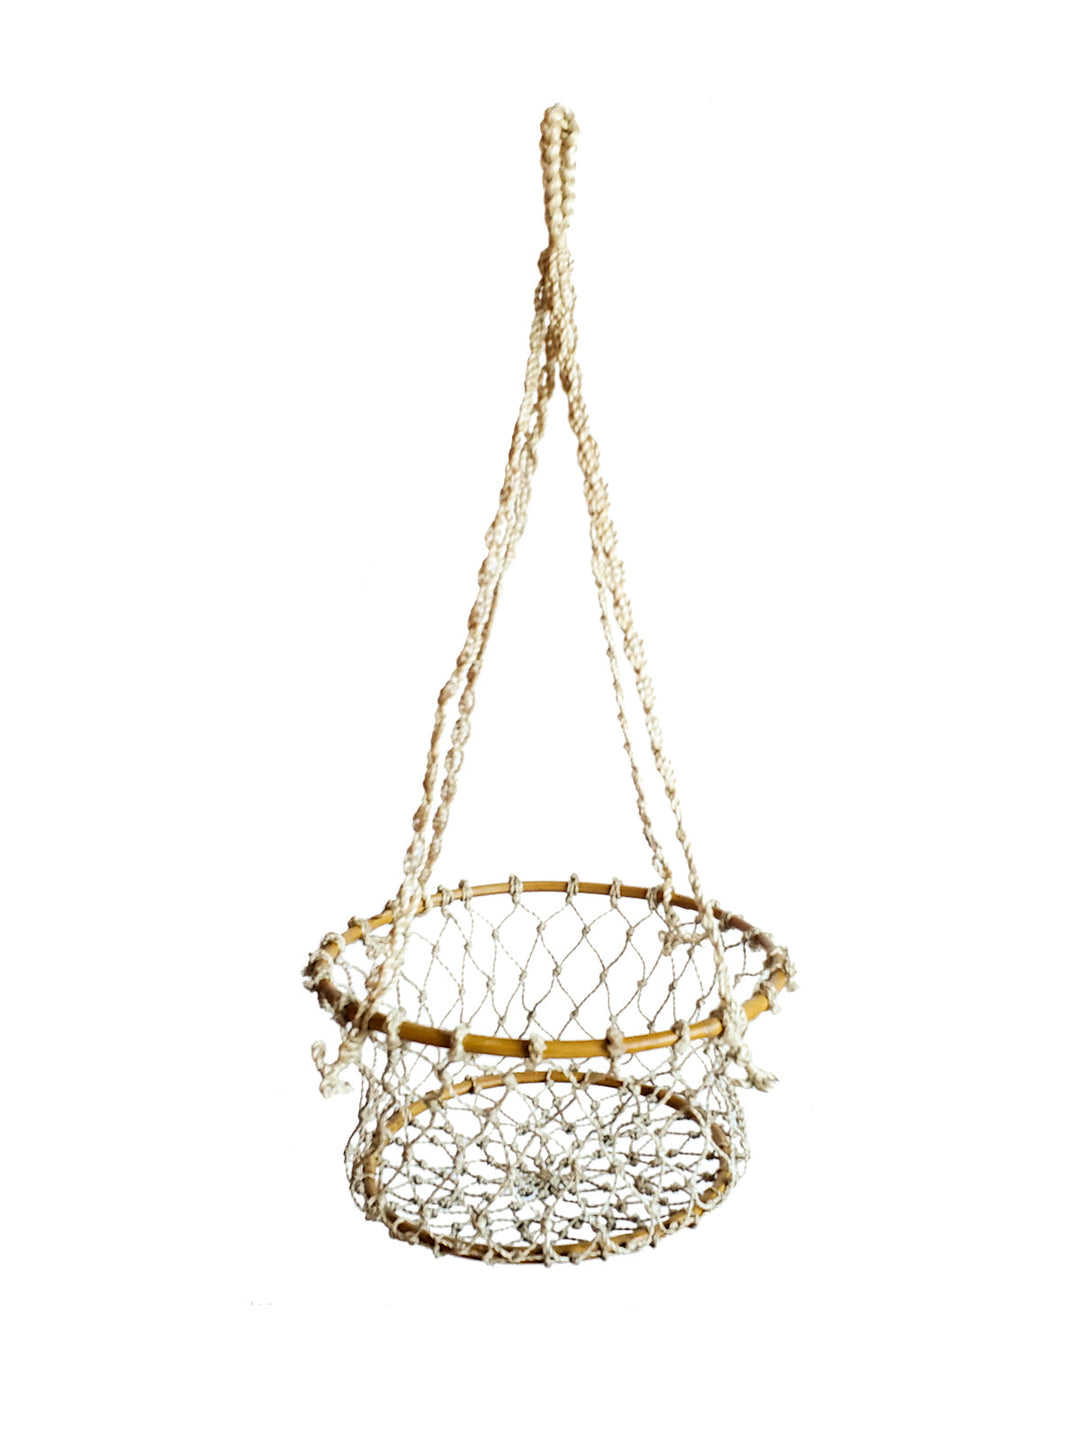 Jhuri Single Hanging Basket-5